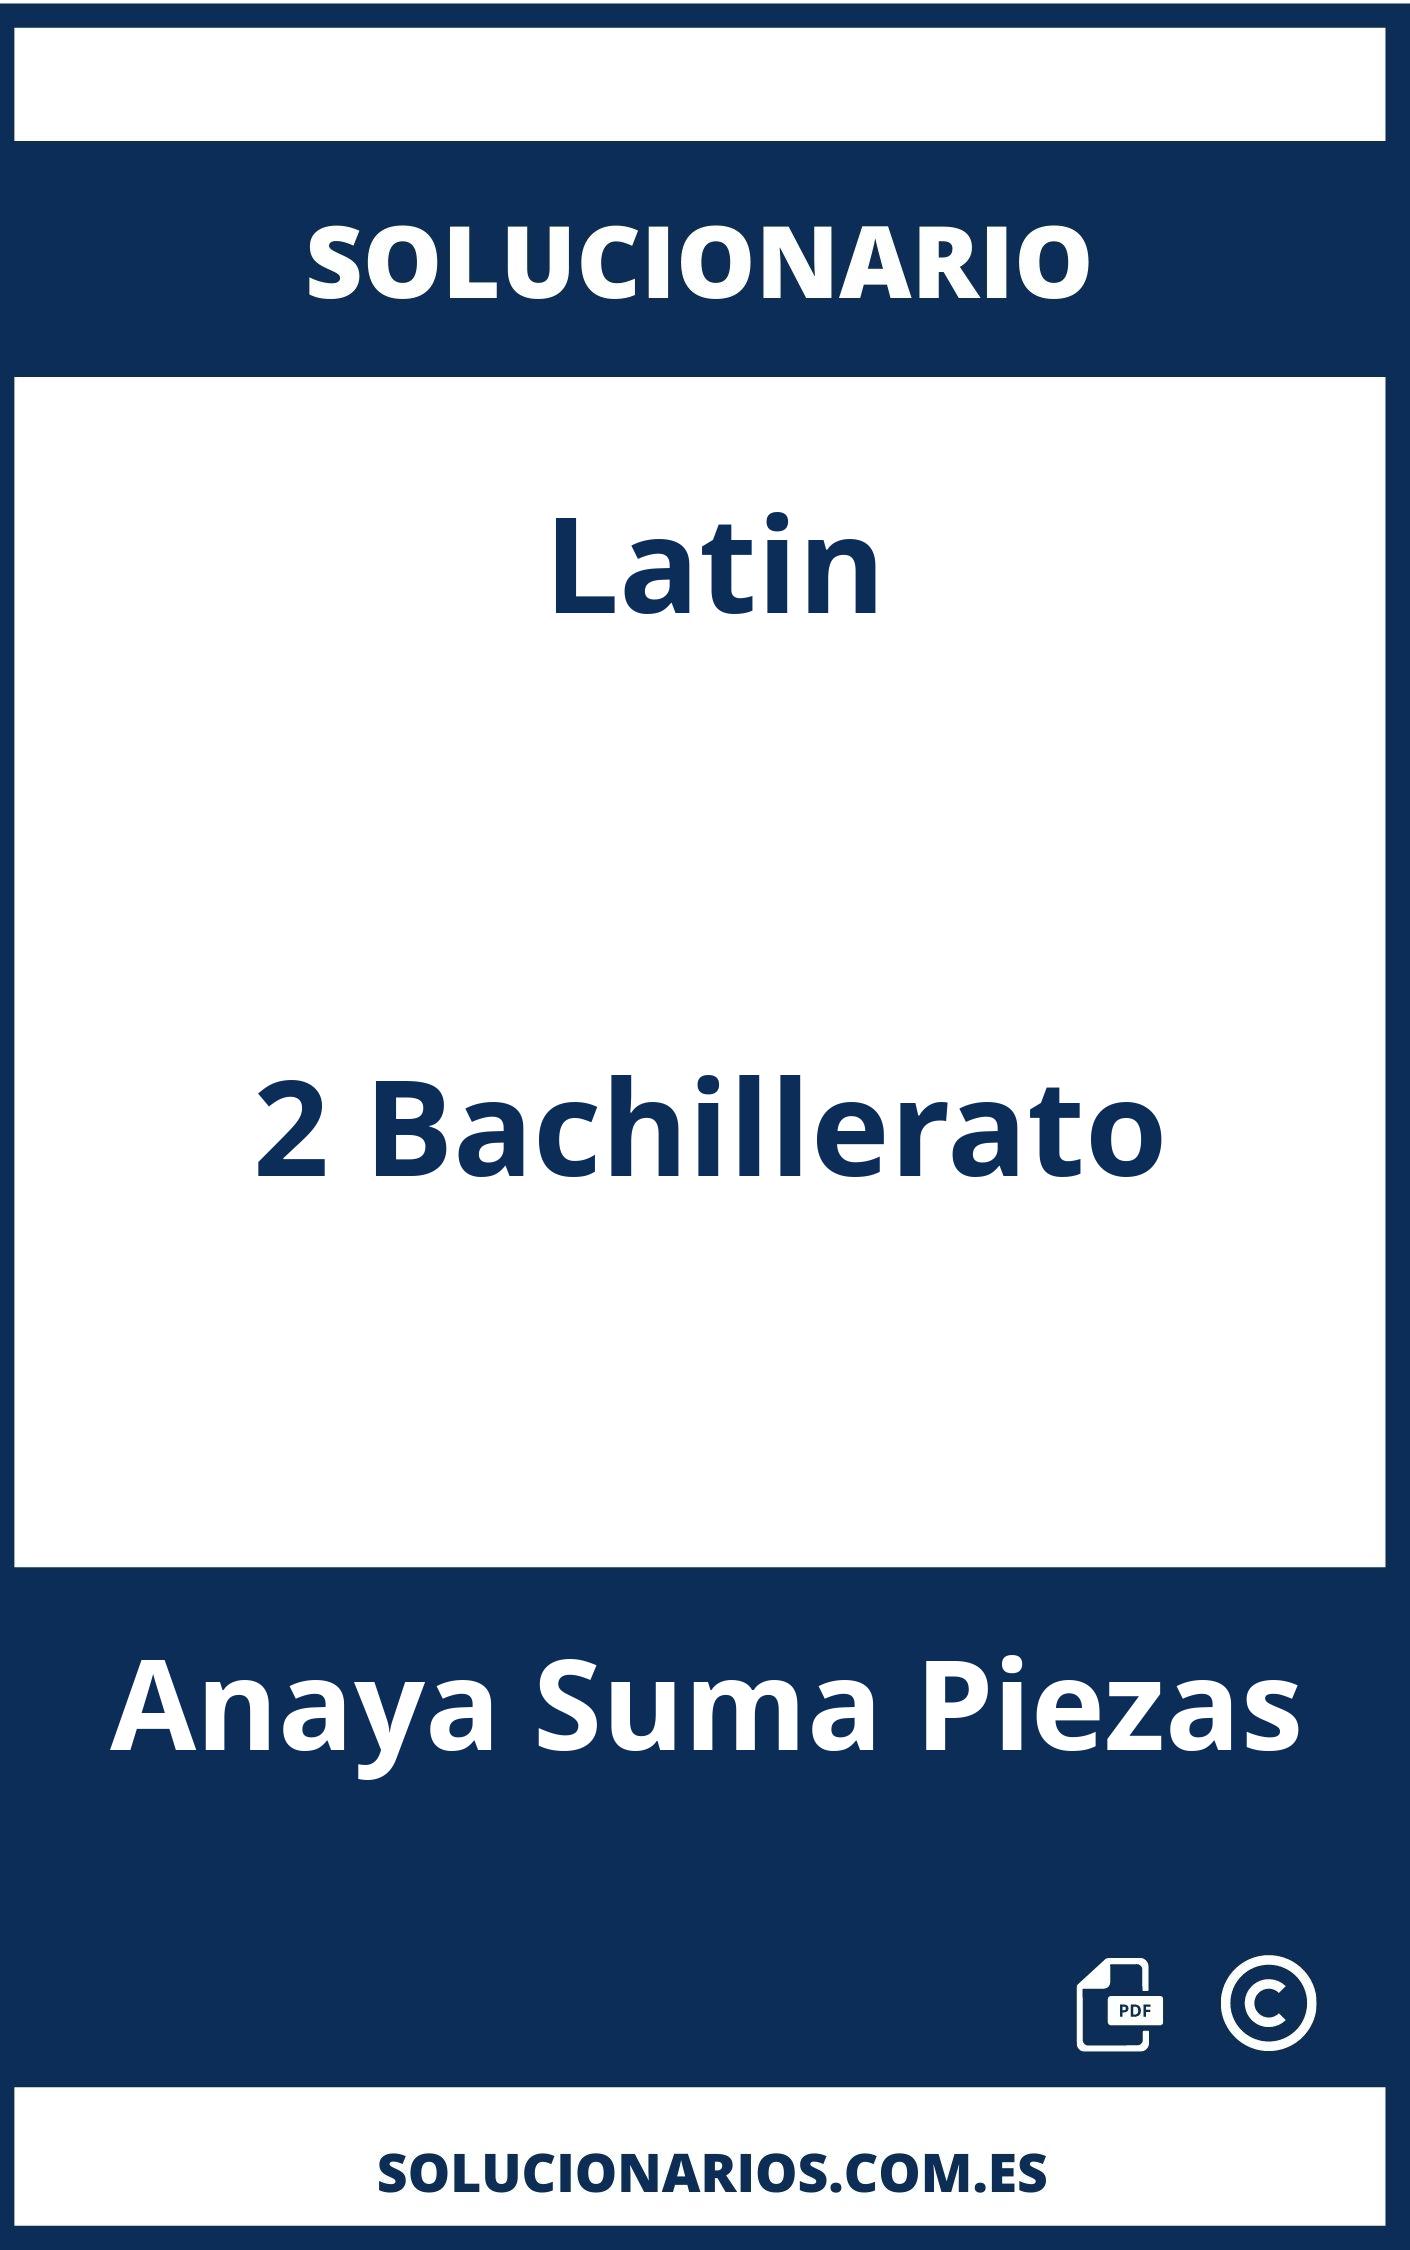 Solucionario Latin 2 Bachillerato Anaya Suma Piezas